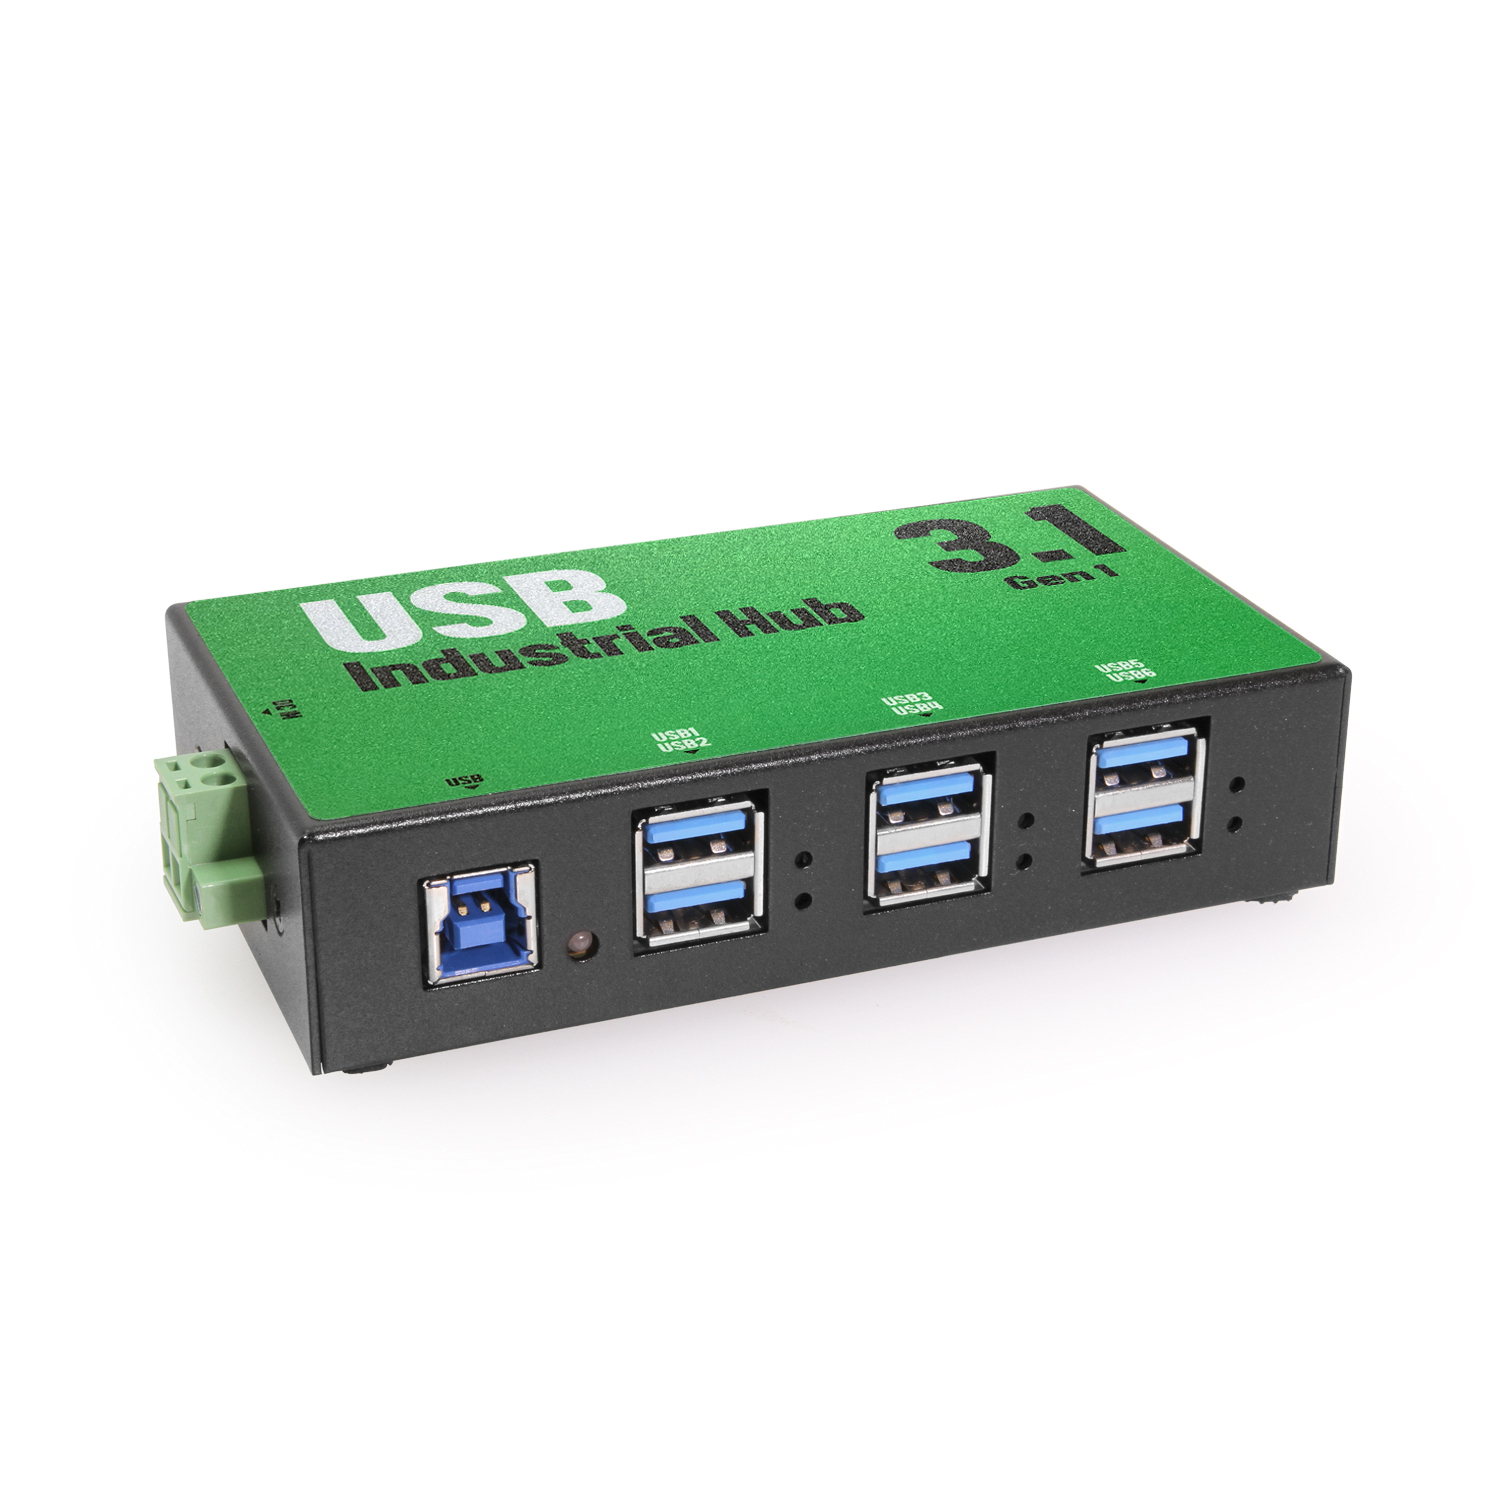 Steward Hick ledig stilling 6 Port USB 3.2 Gen 1 Hub w/ Over Current Protection & Port Status LEDs -  Coolgear